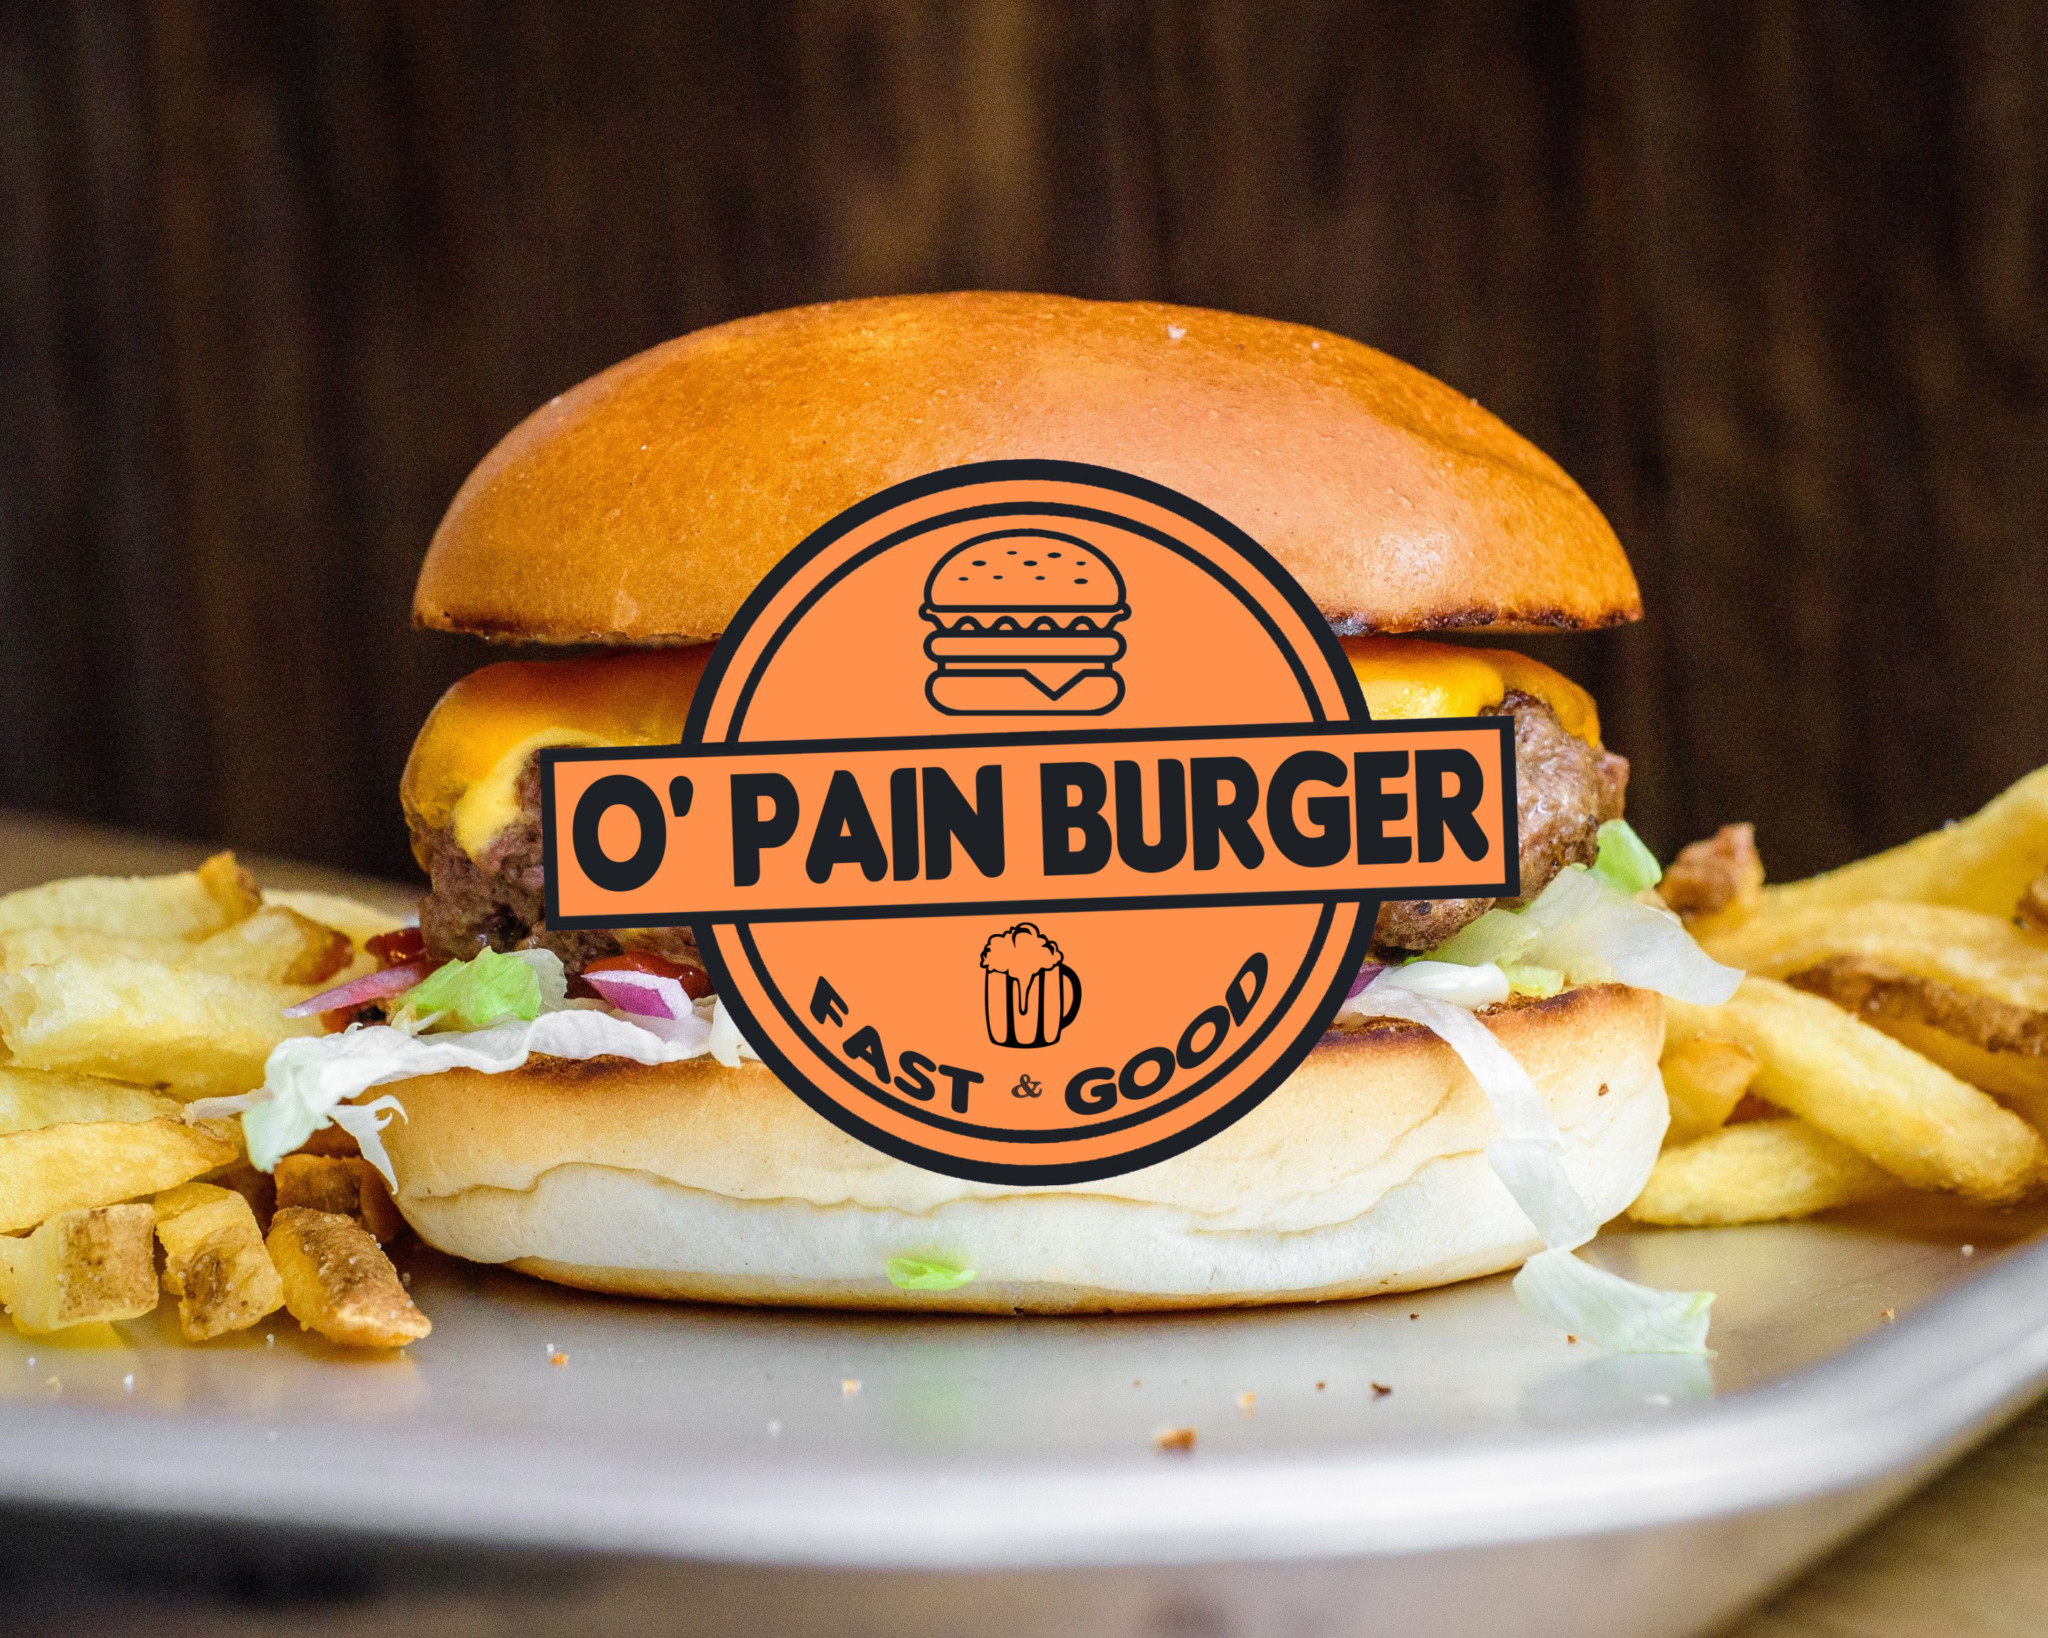 O'pain burger